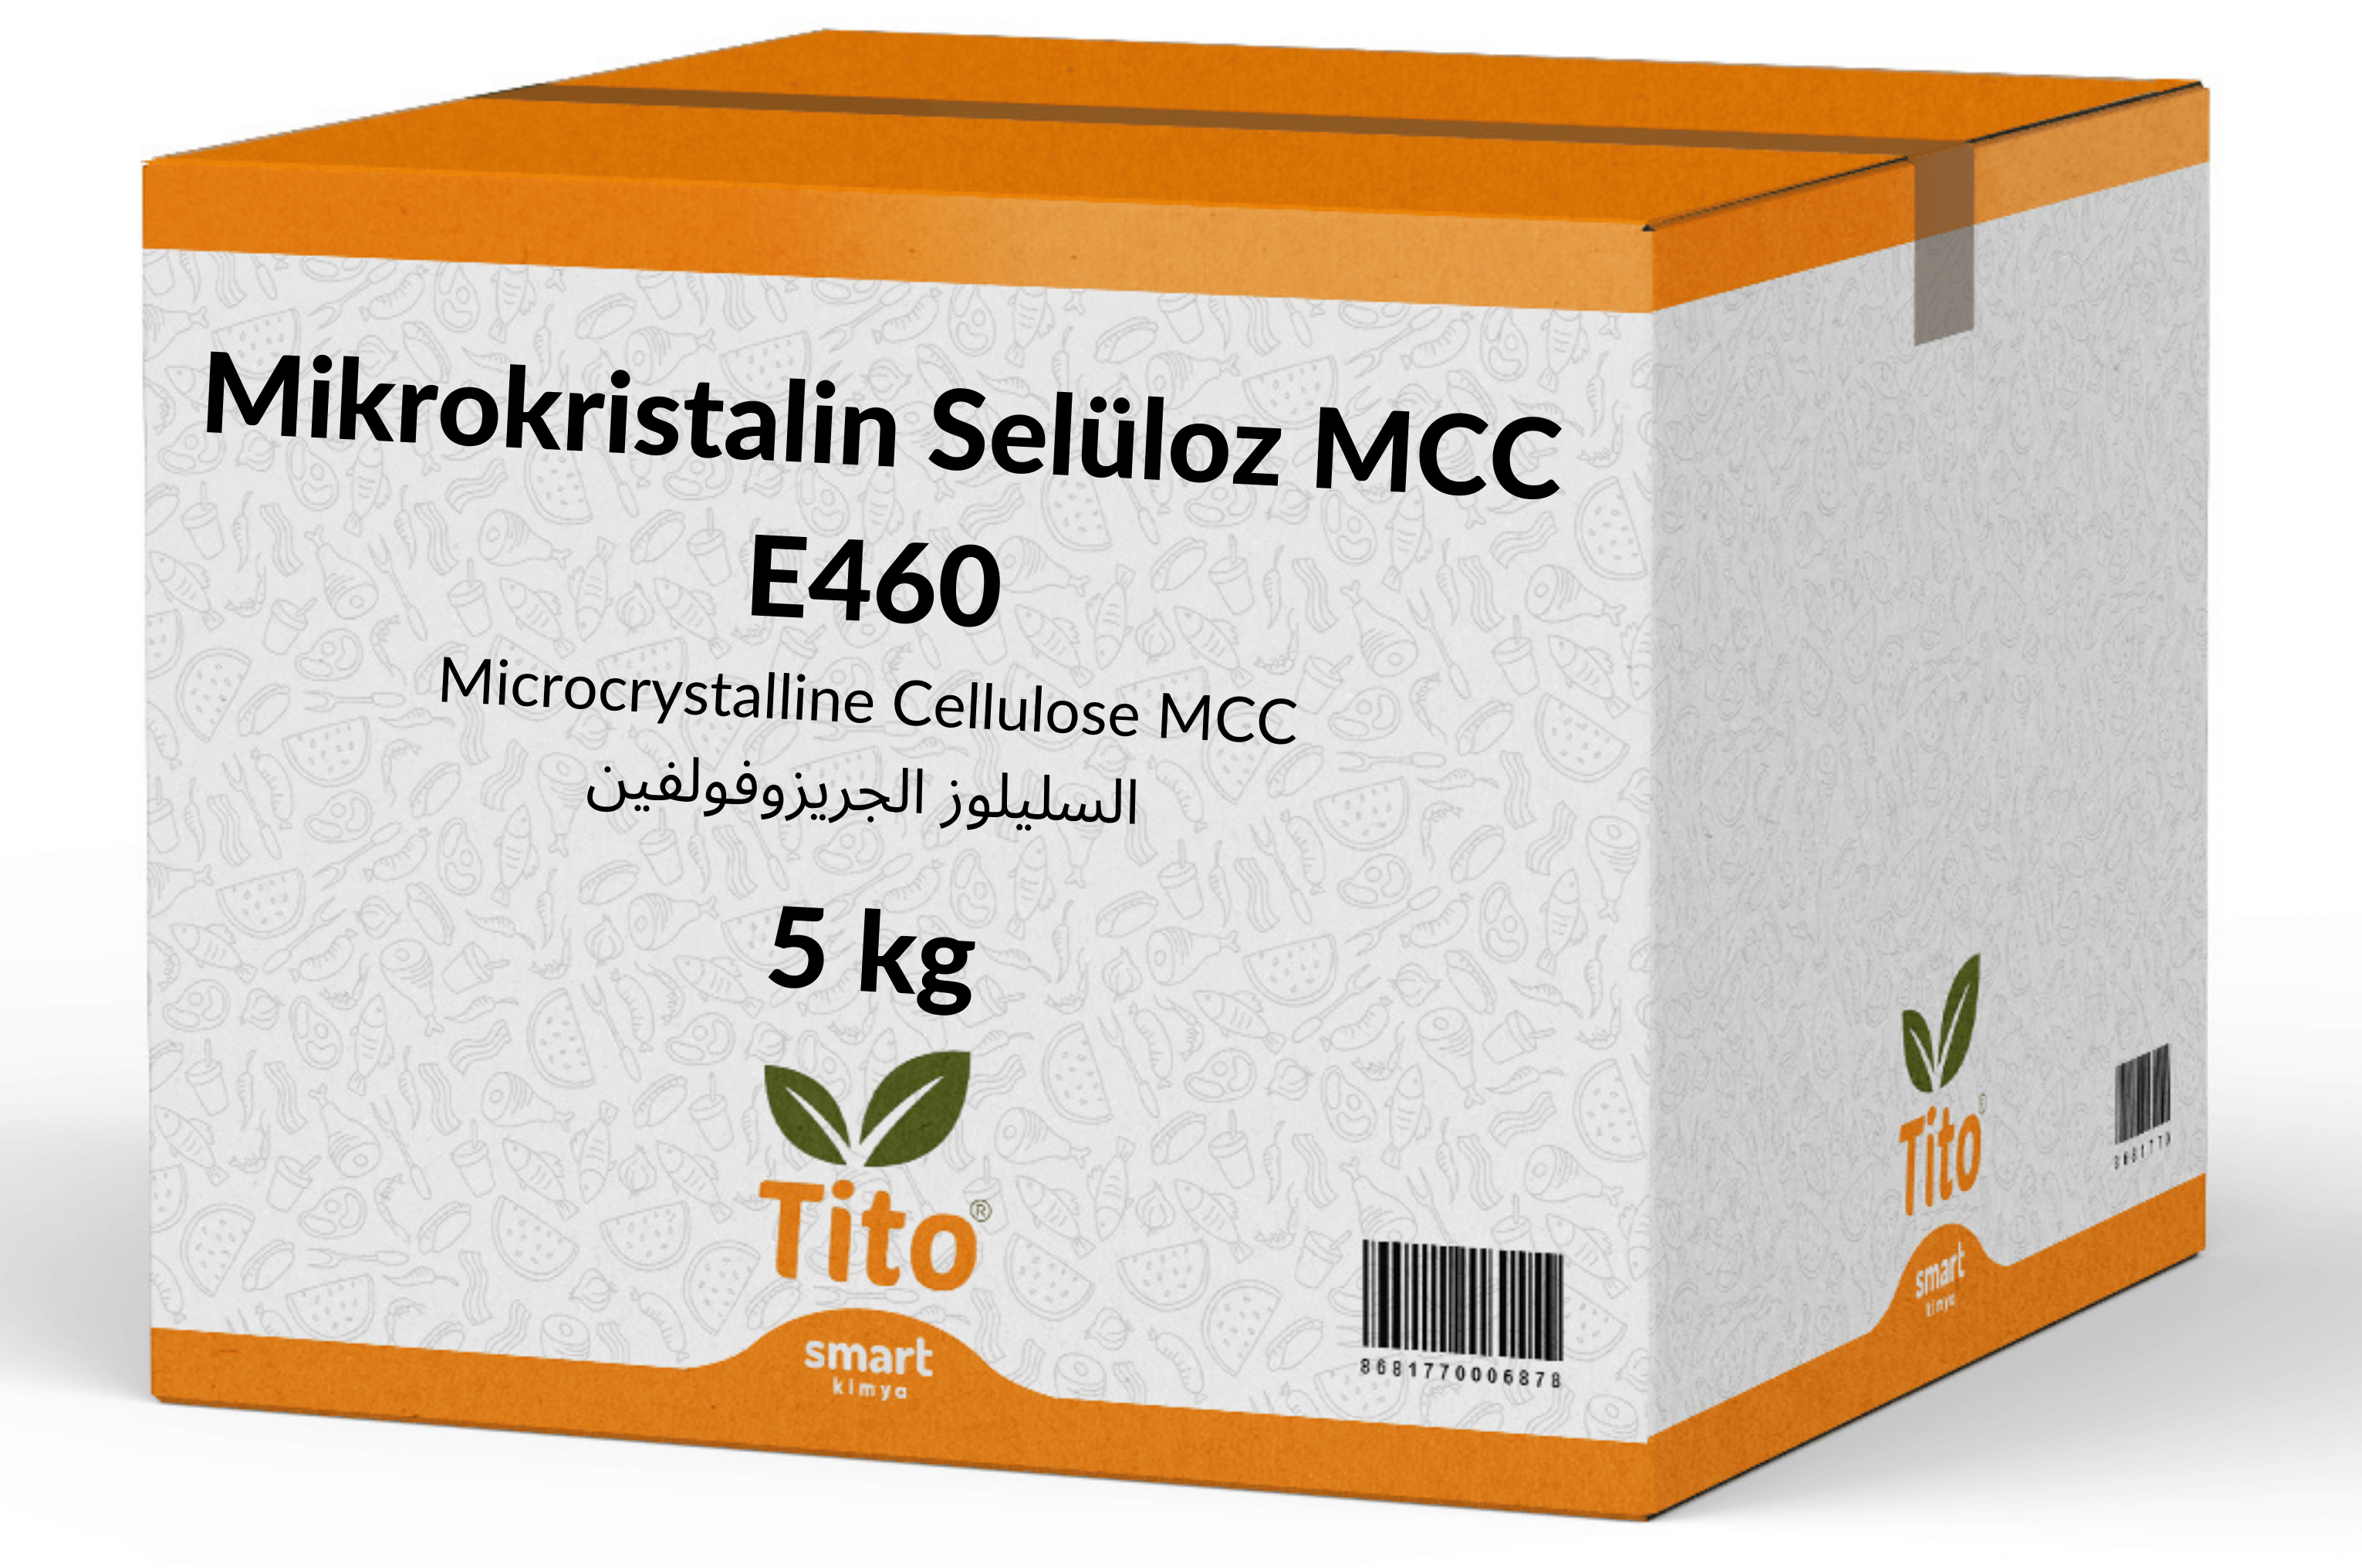 Mikrokristalin Selüloz MCC E460 5 kg